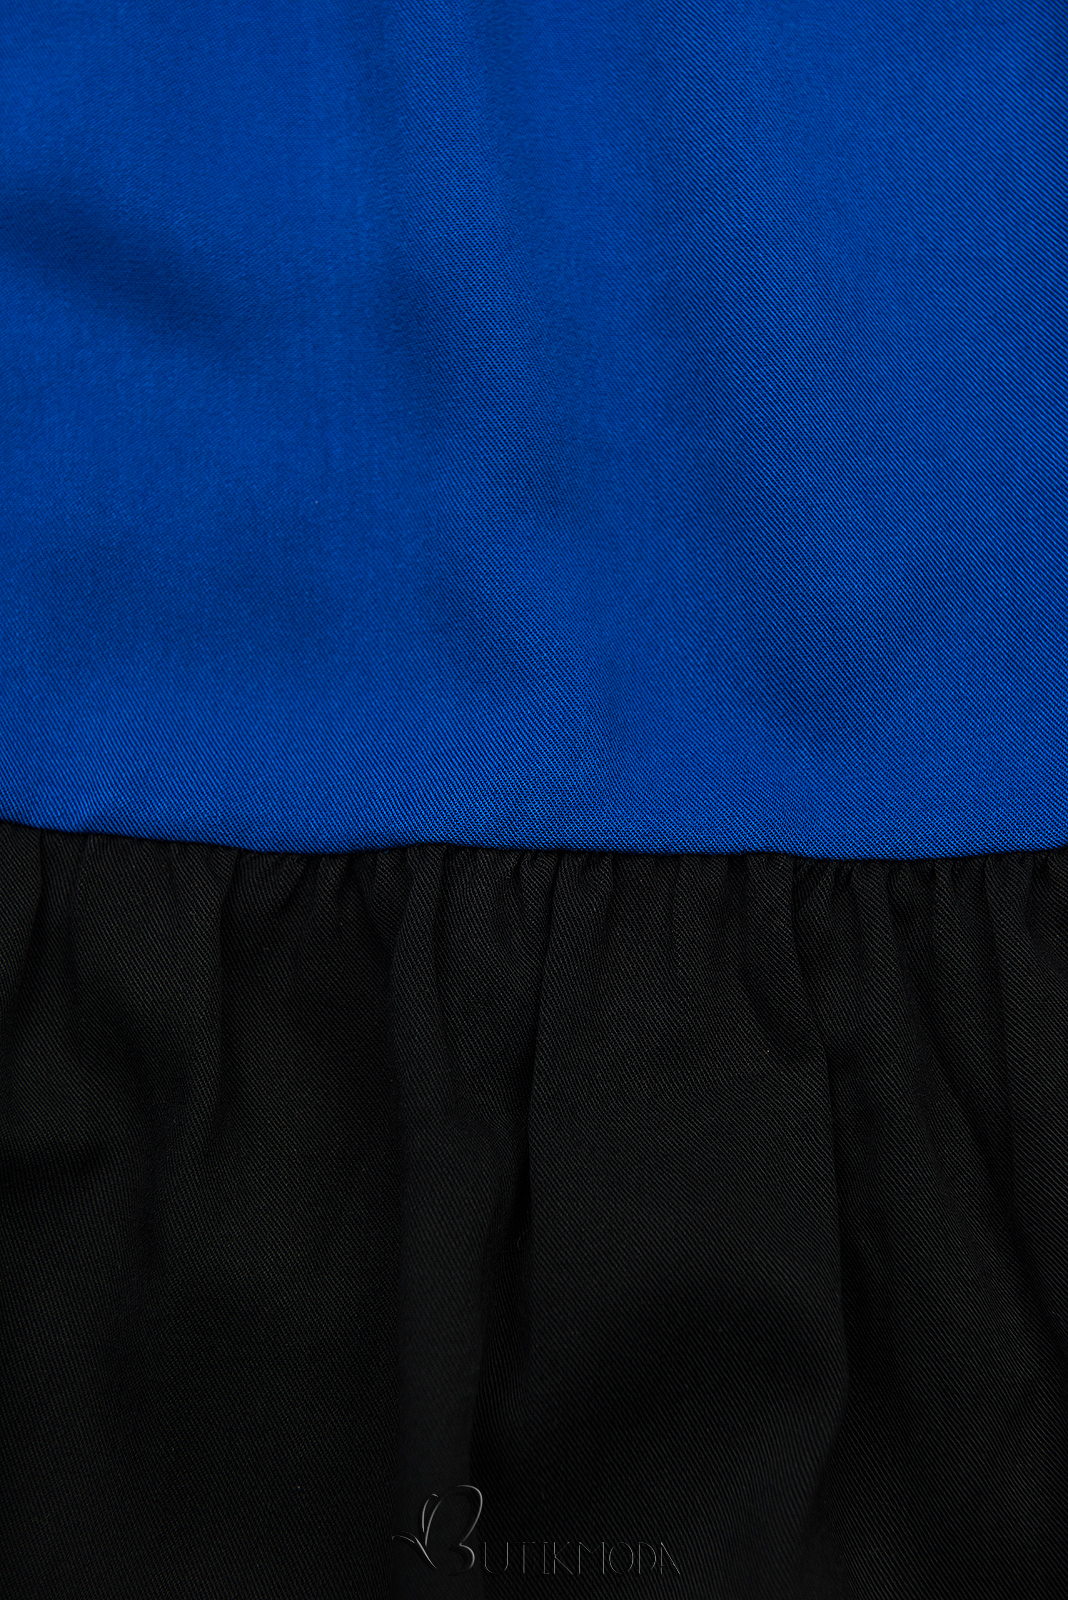 Rochie de vară din viscoză albă/albastră/neagră